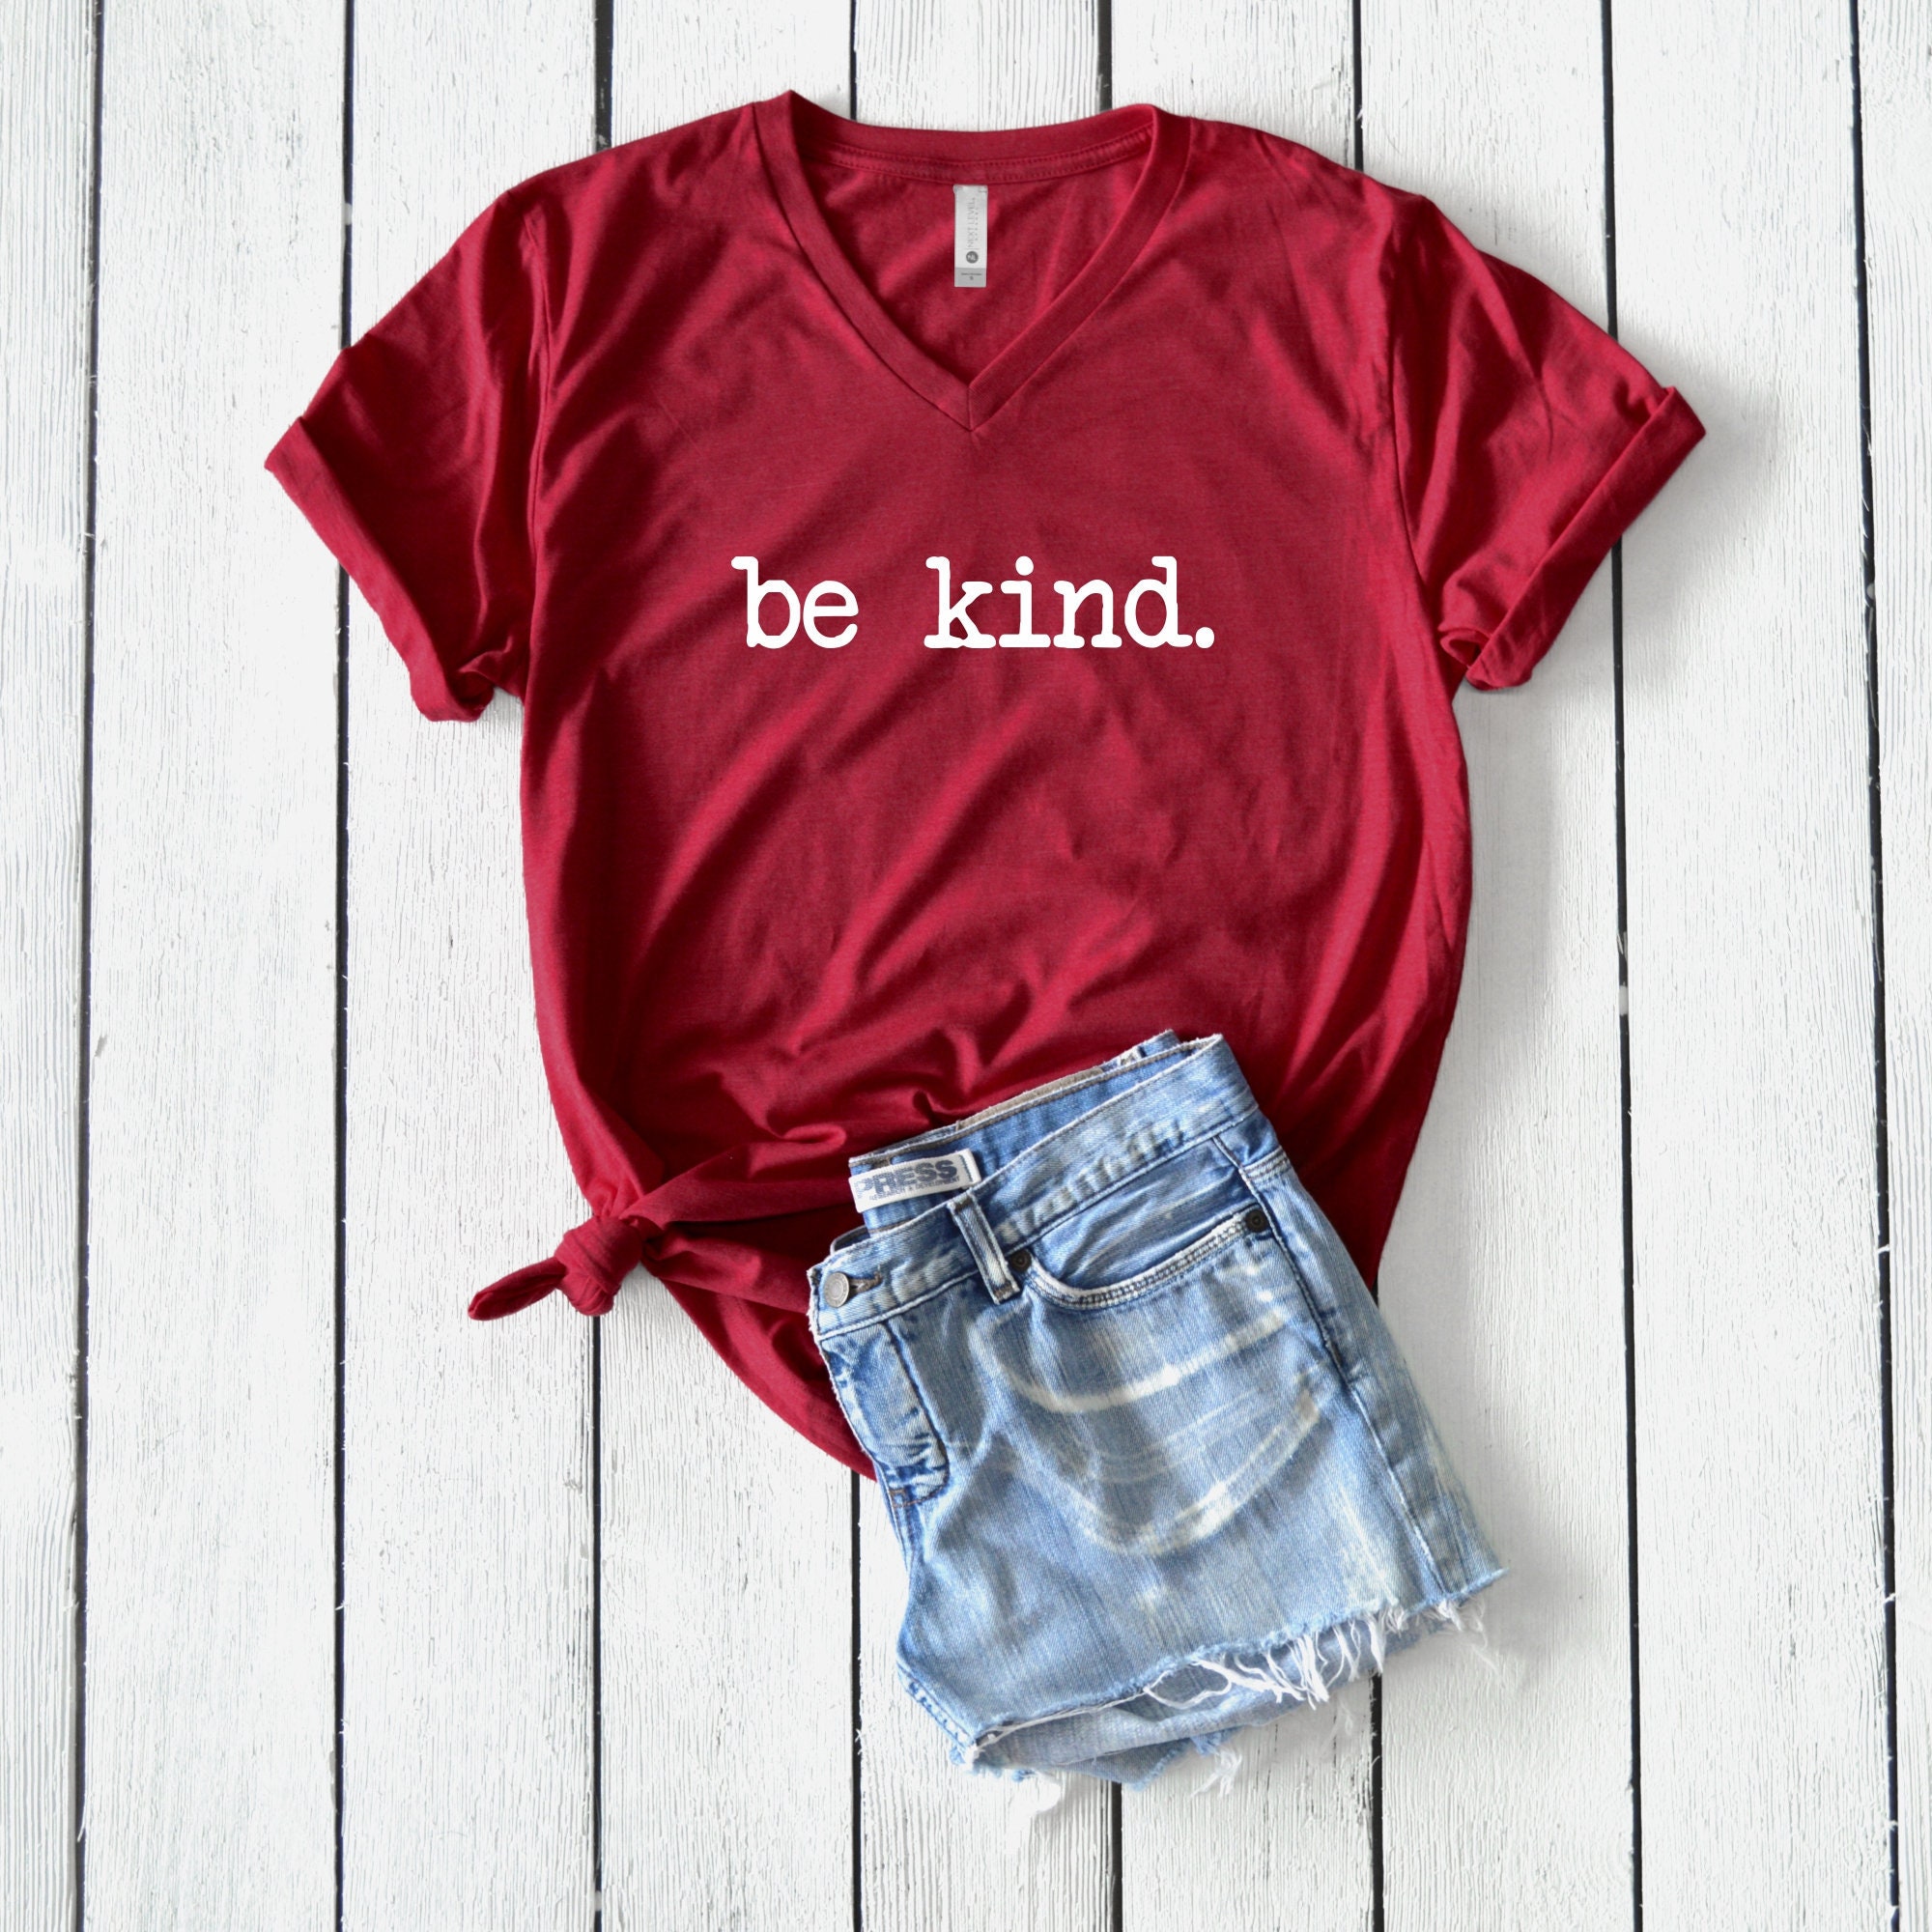 Be Kind Shirt Be Kind Be Kind T-Shirt Be Kind Tee | Etsy